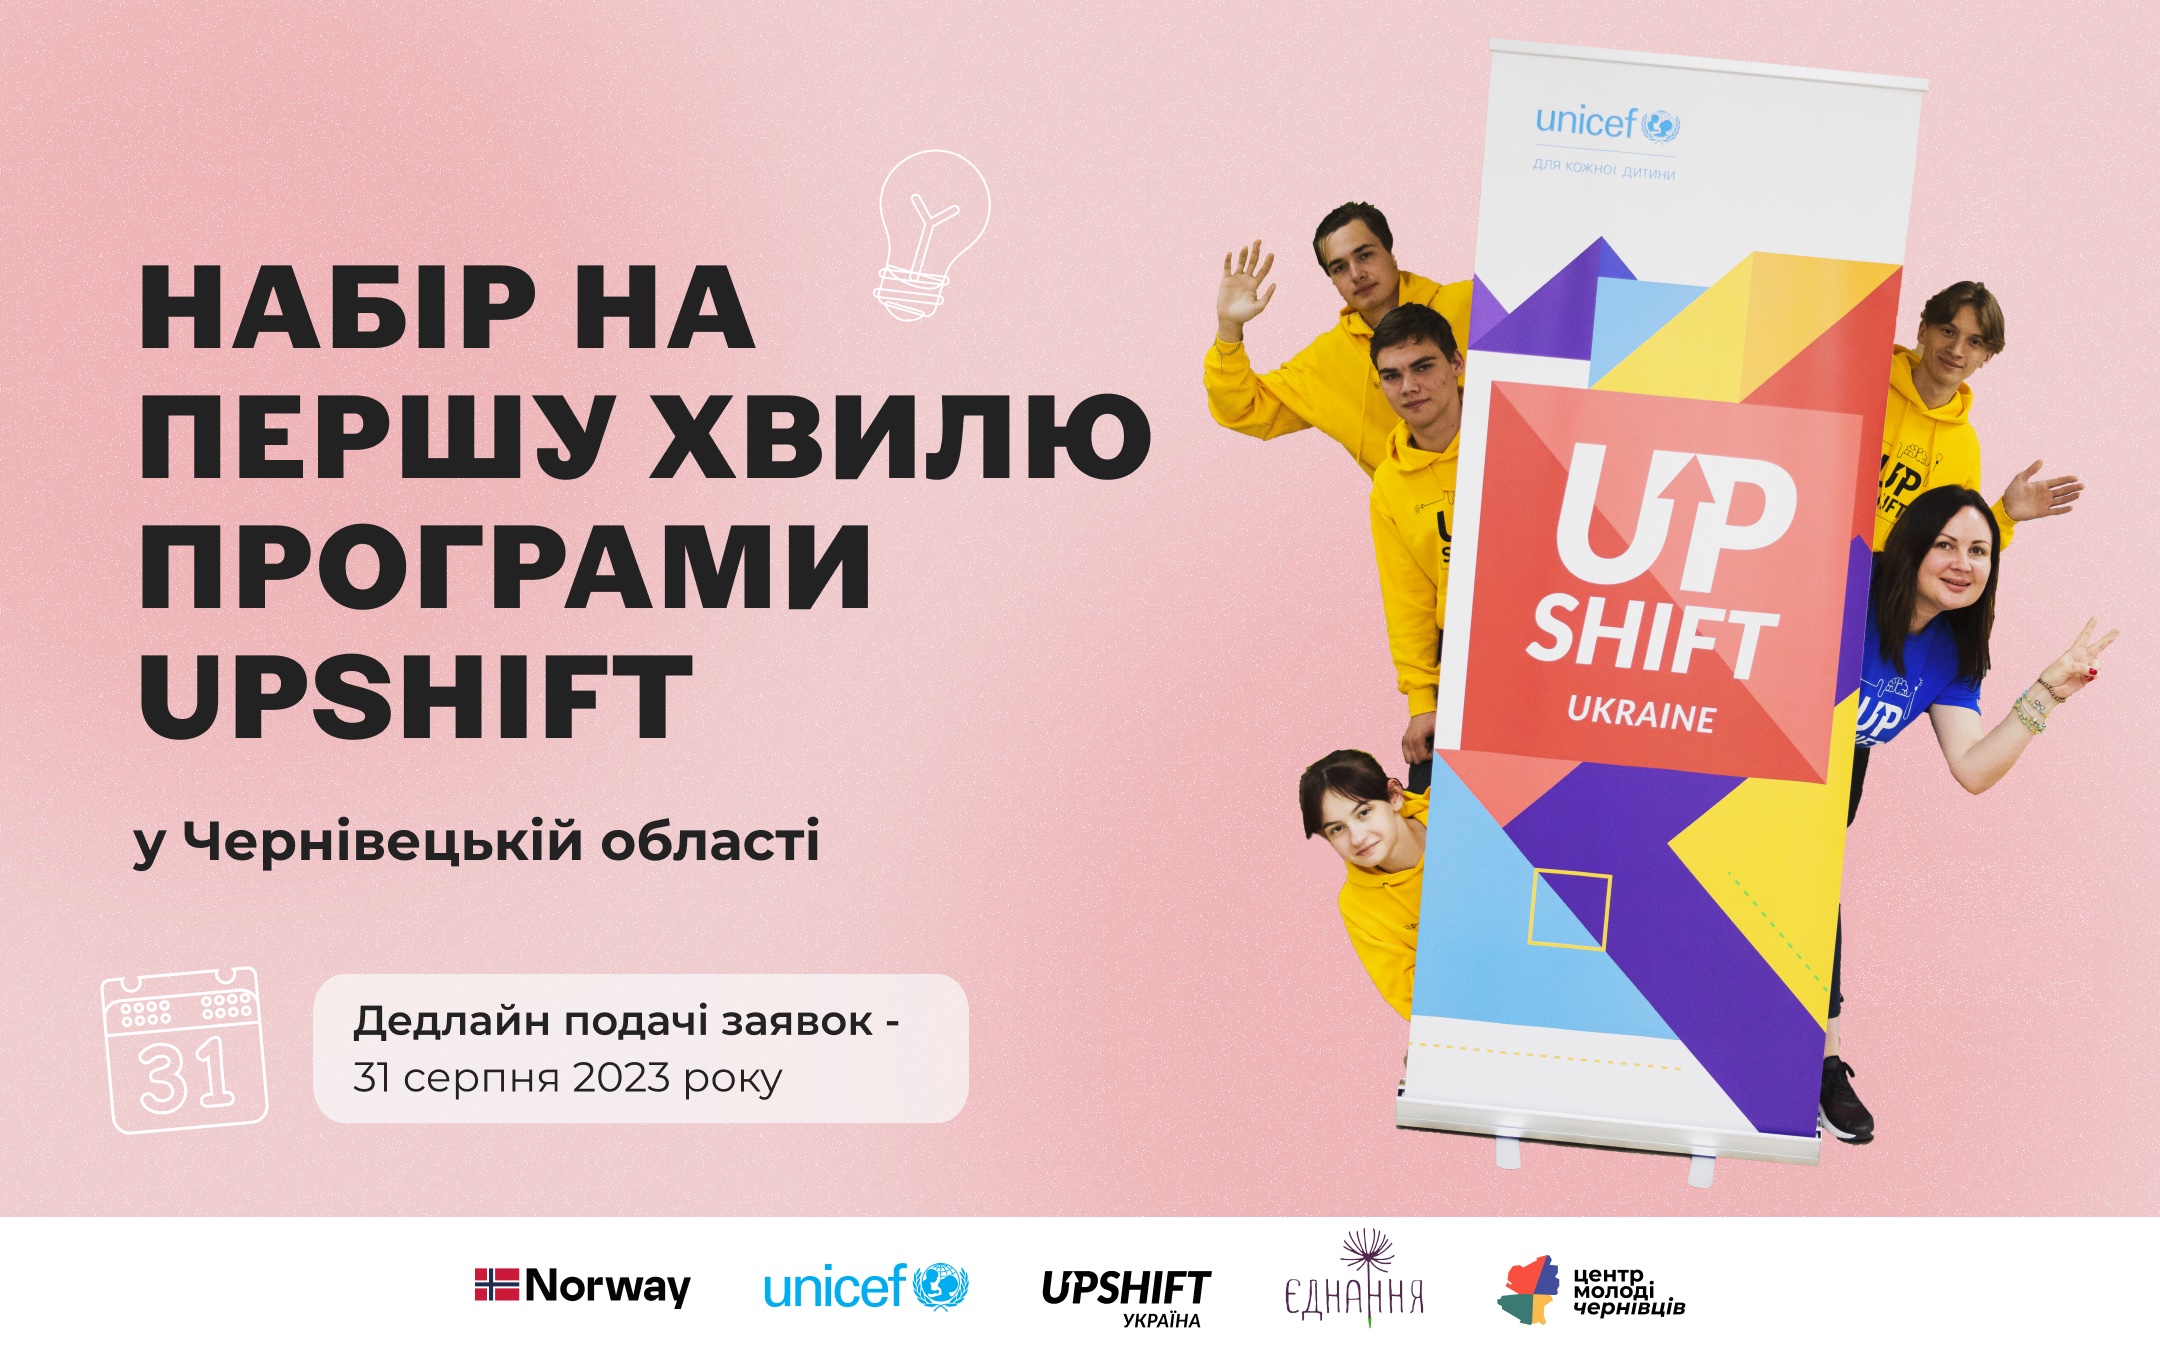 Набір на першу хвилю програми UPSHIFT у Чернівецькій області